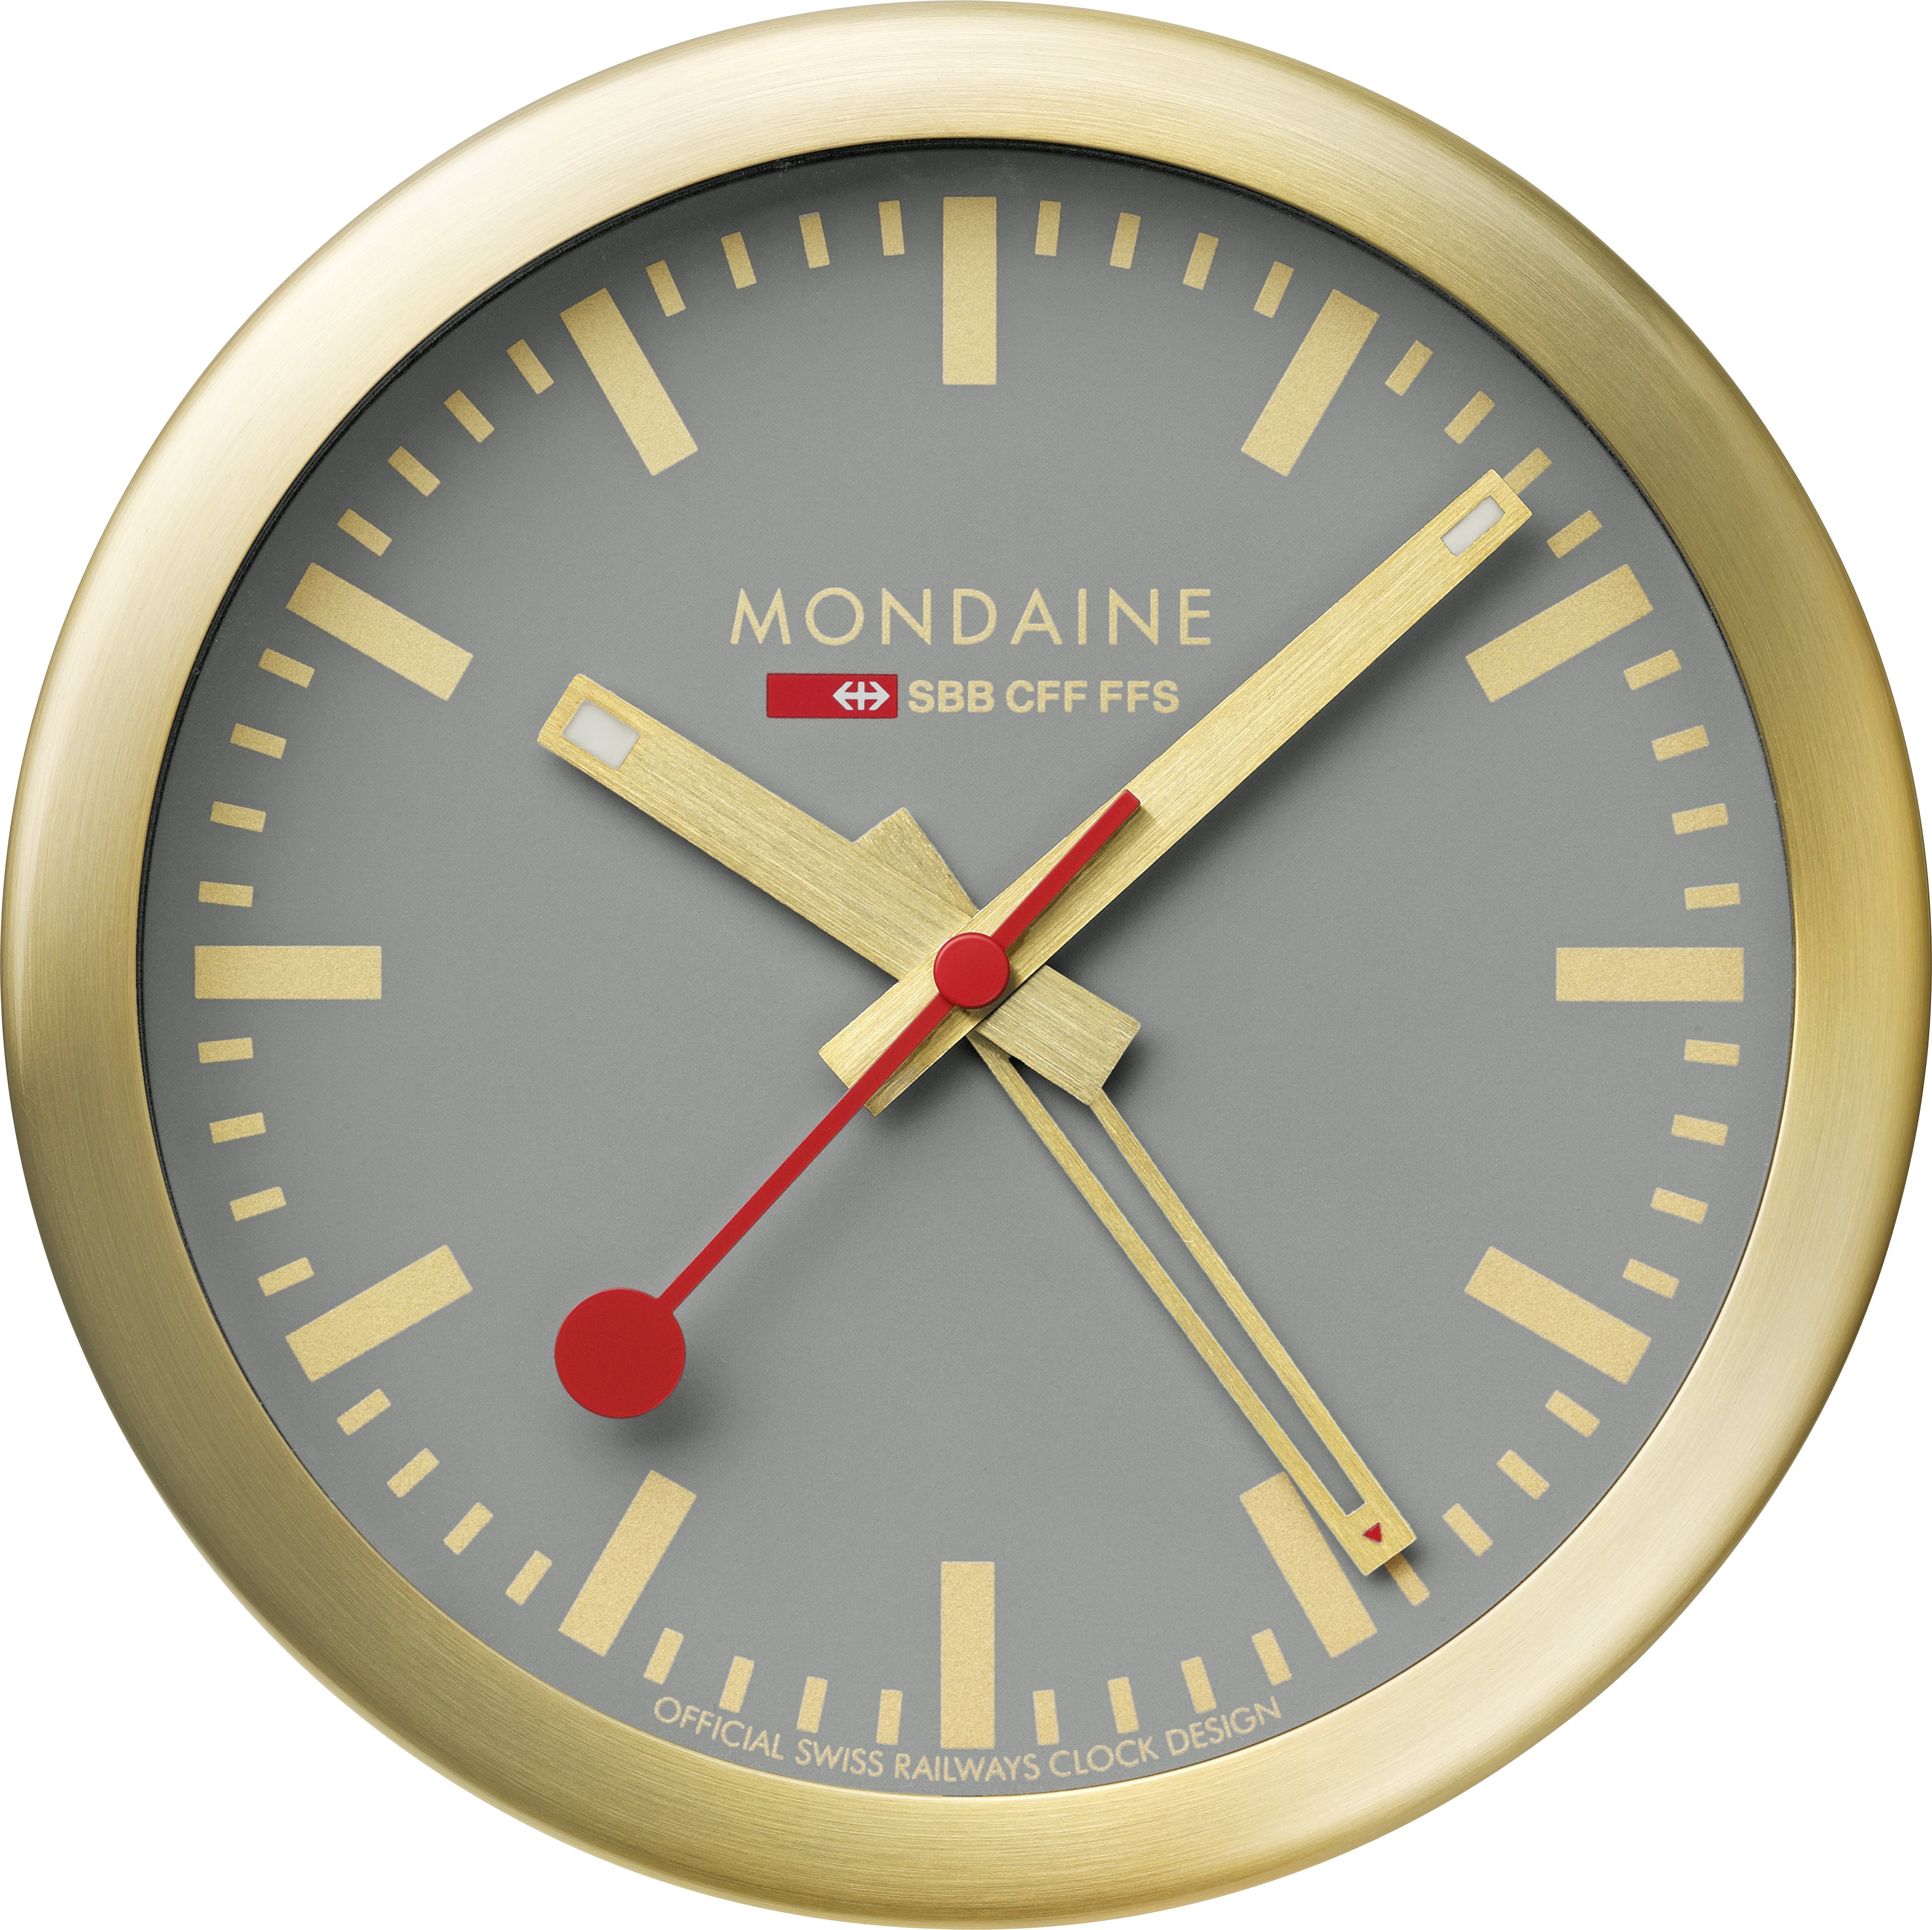 MONDAINE Mur / Horloge de table 125mm A997.86SBG.1 gris/or, réveil